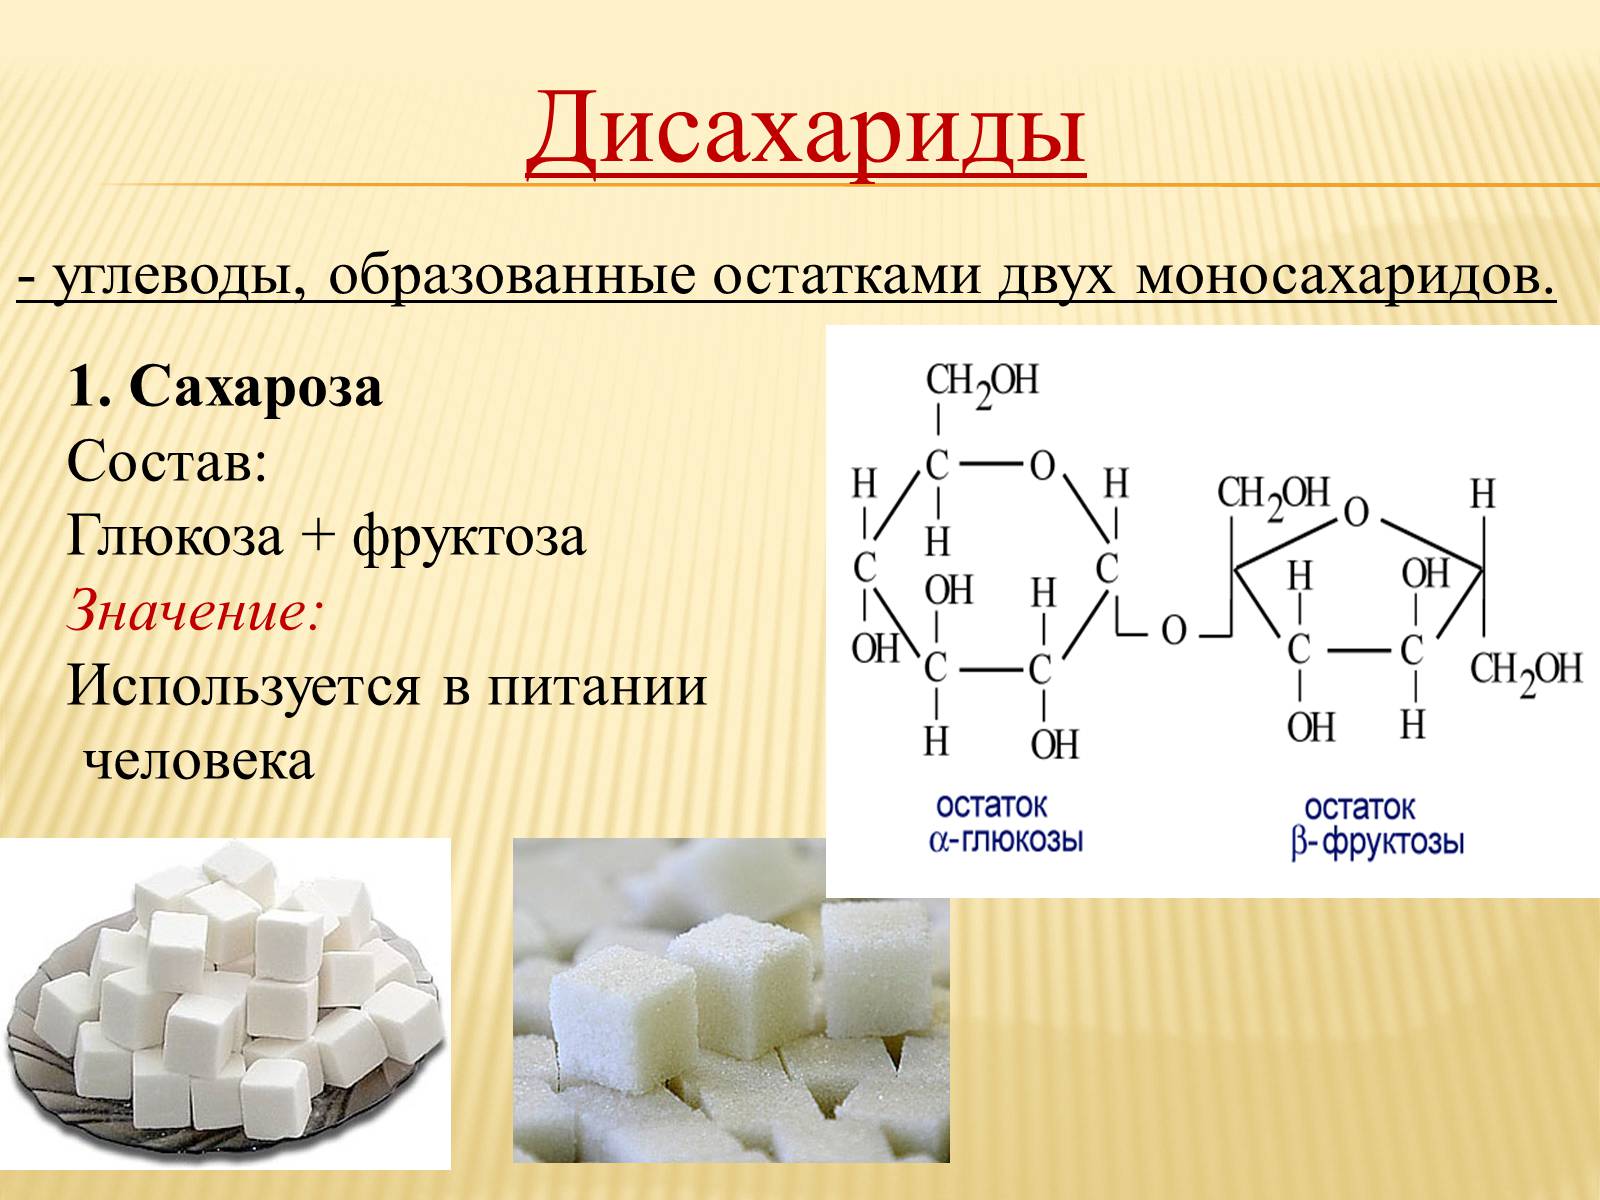 Состав и строение дисахариды сахароза